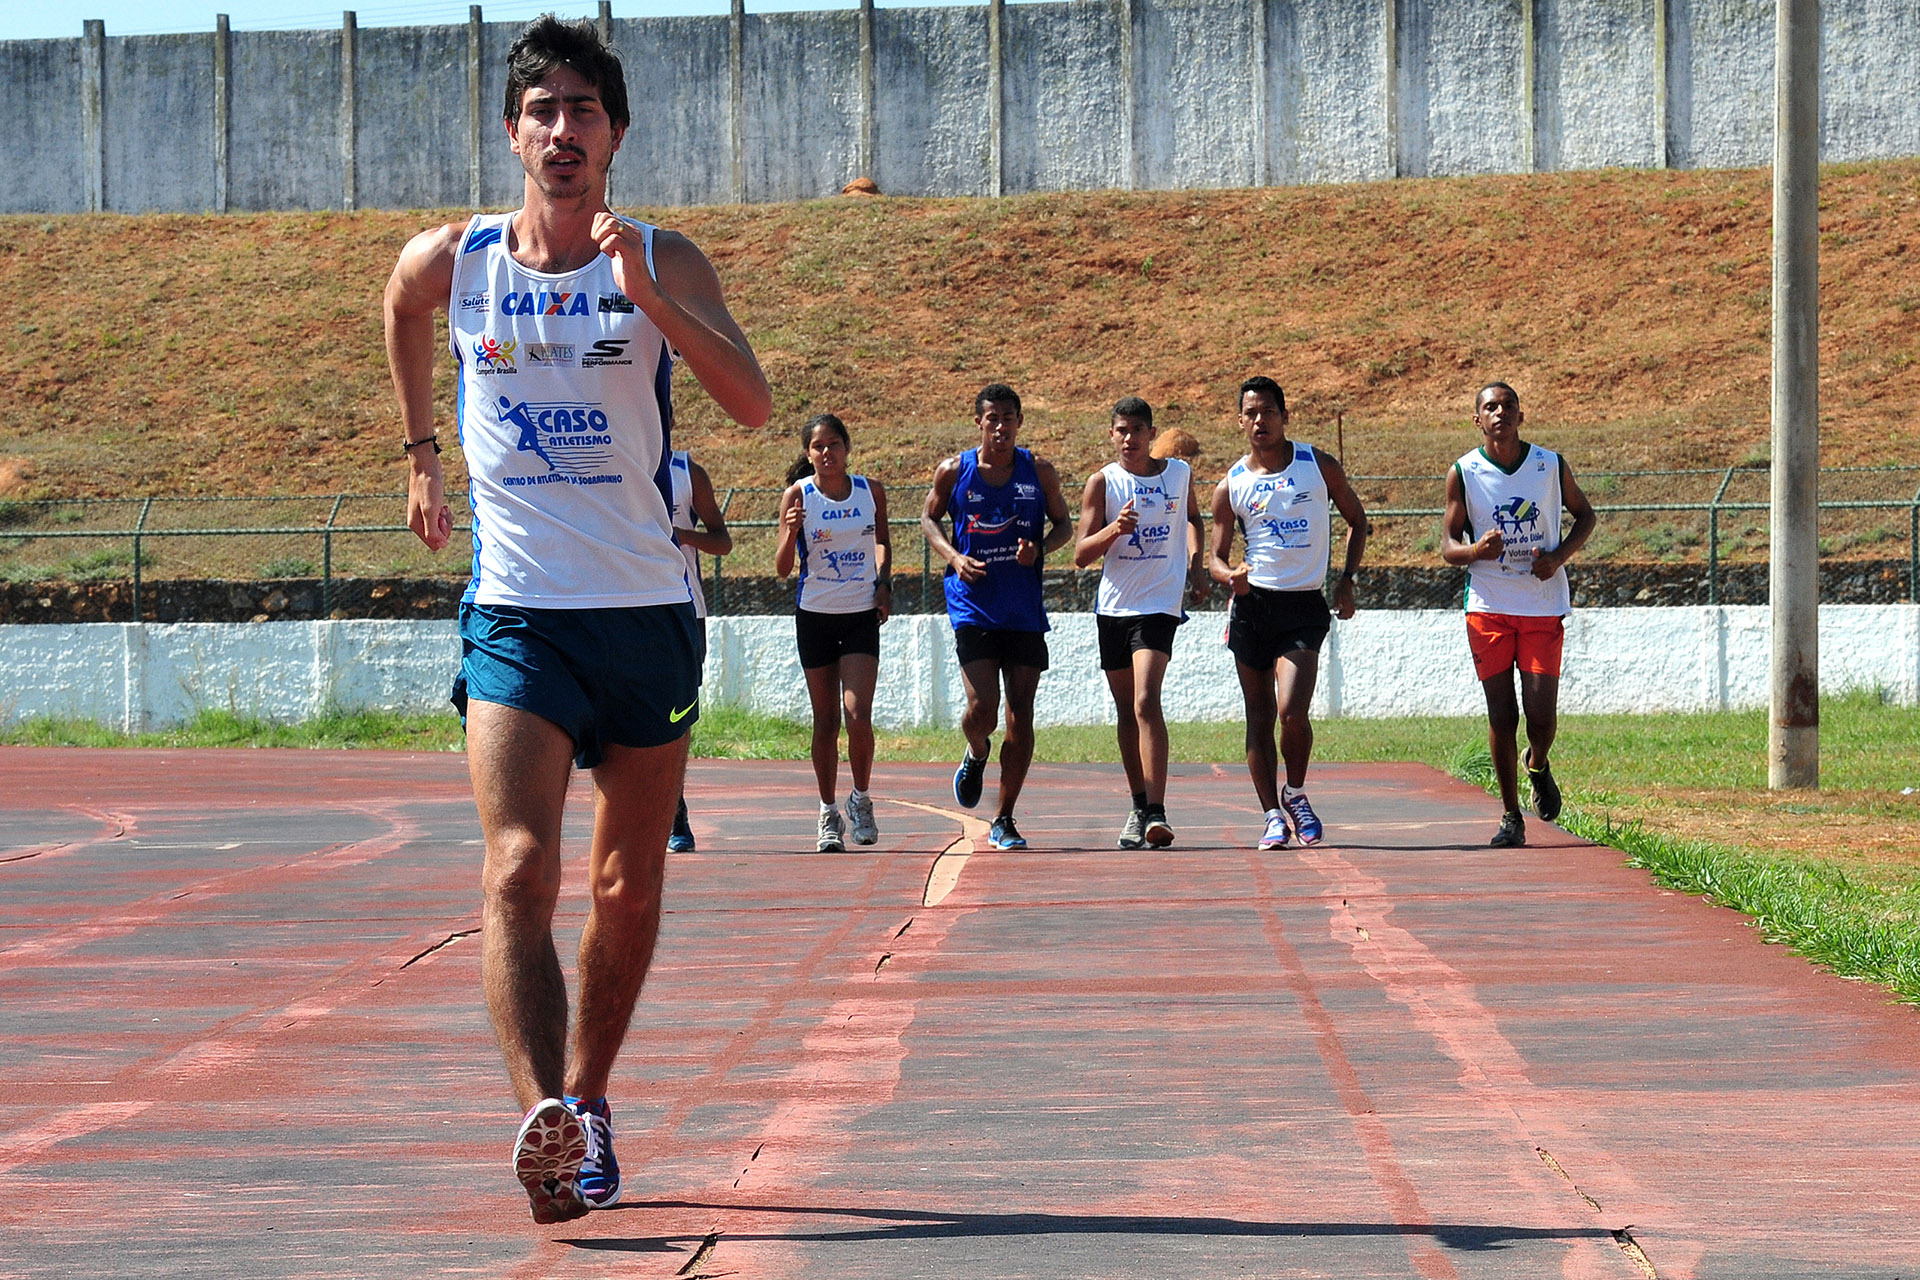 Entre eles, o medalhista olímpico Caio Bonfim treina a marcha atlética com jovens e quer incentivar oportunidades nos esportes.